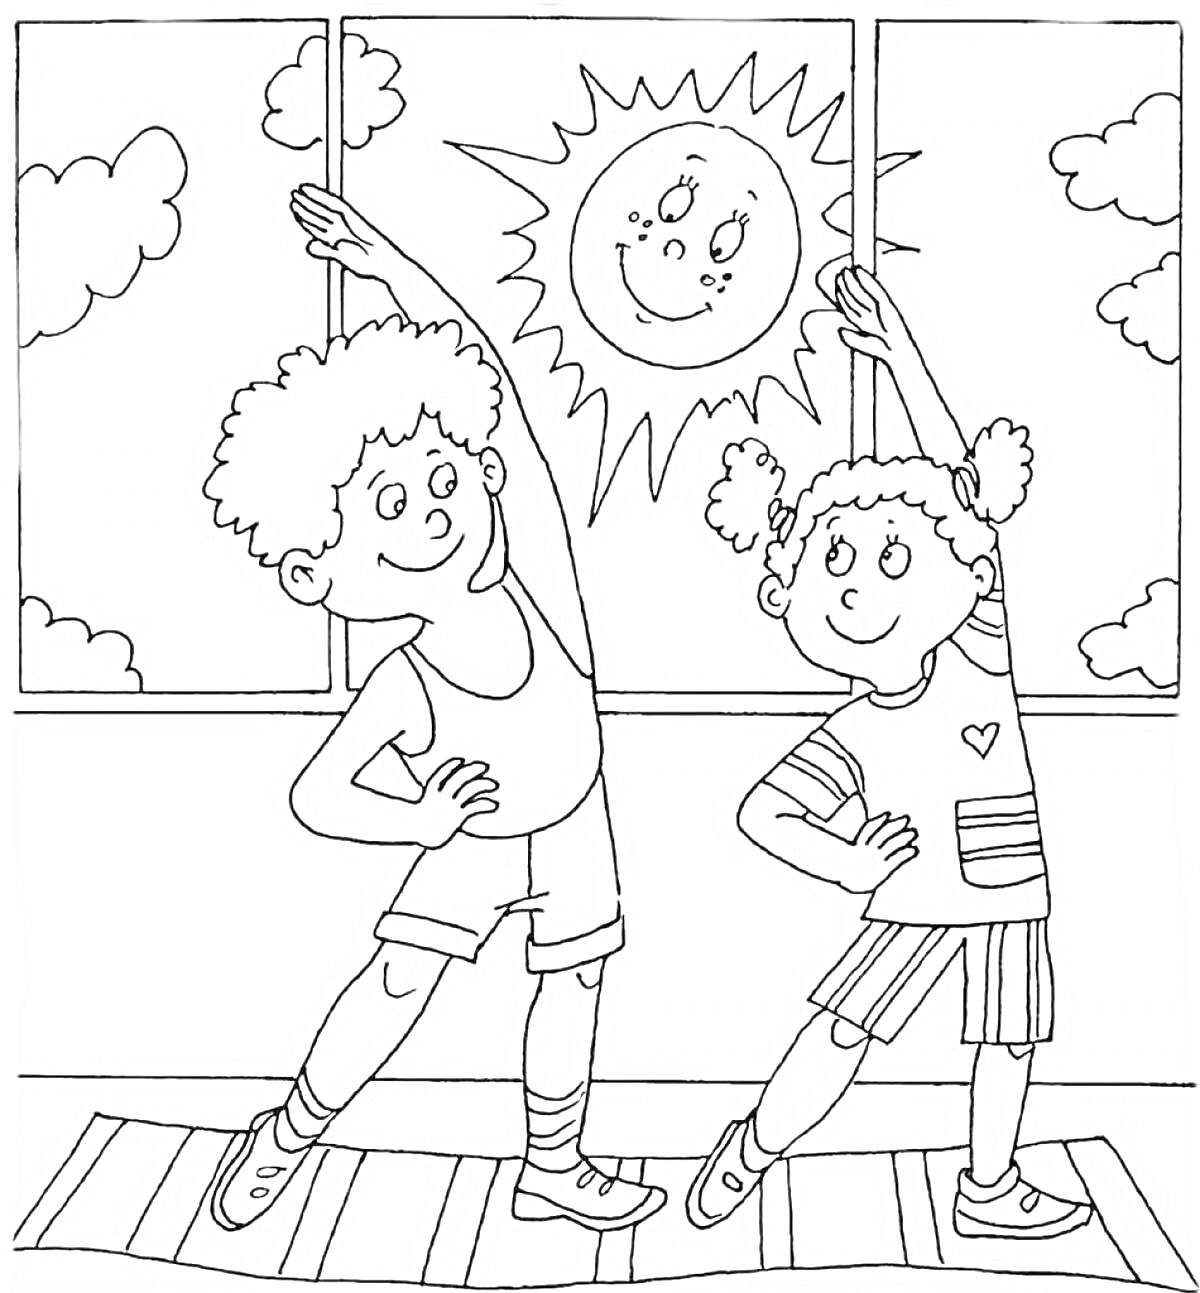 Двое детей занимаются физкультурой перед окном, за которым светит улыбающееся солнце, с облаками на фоне.